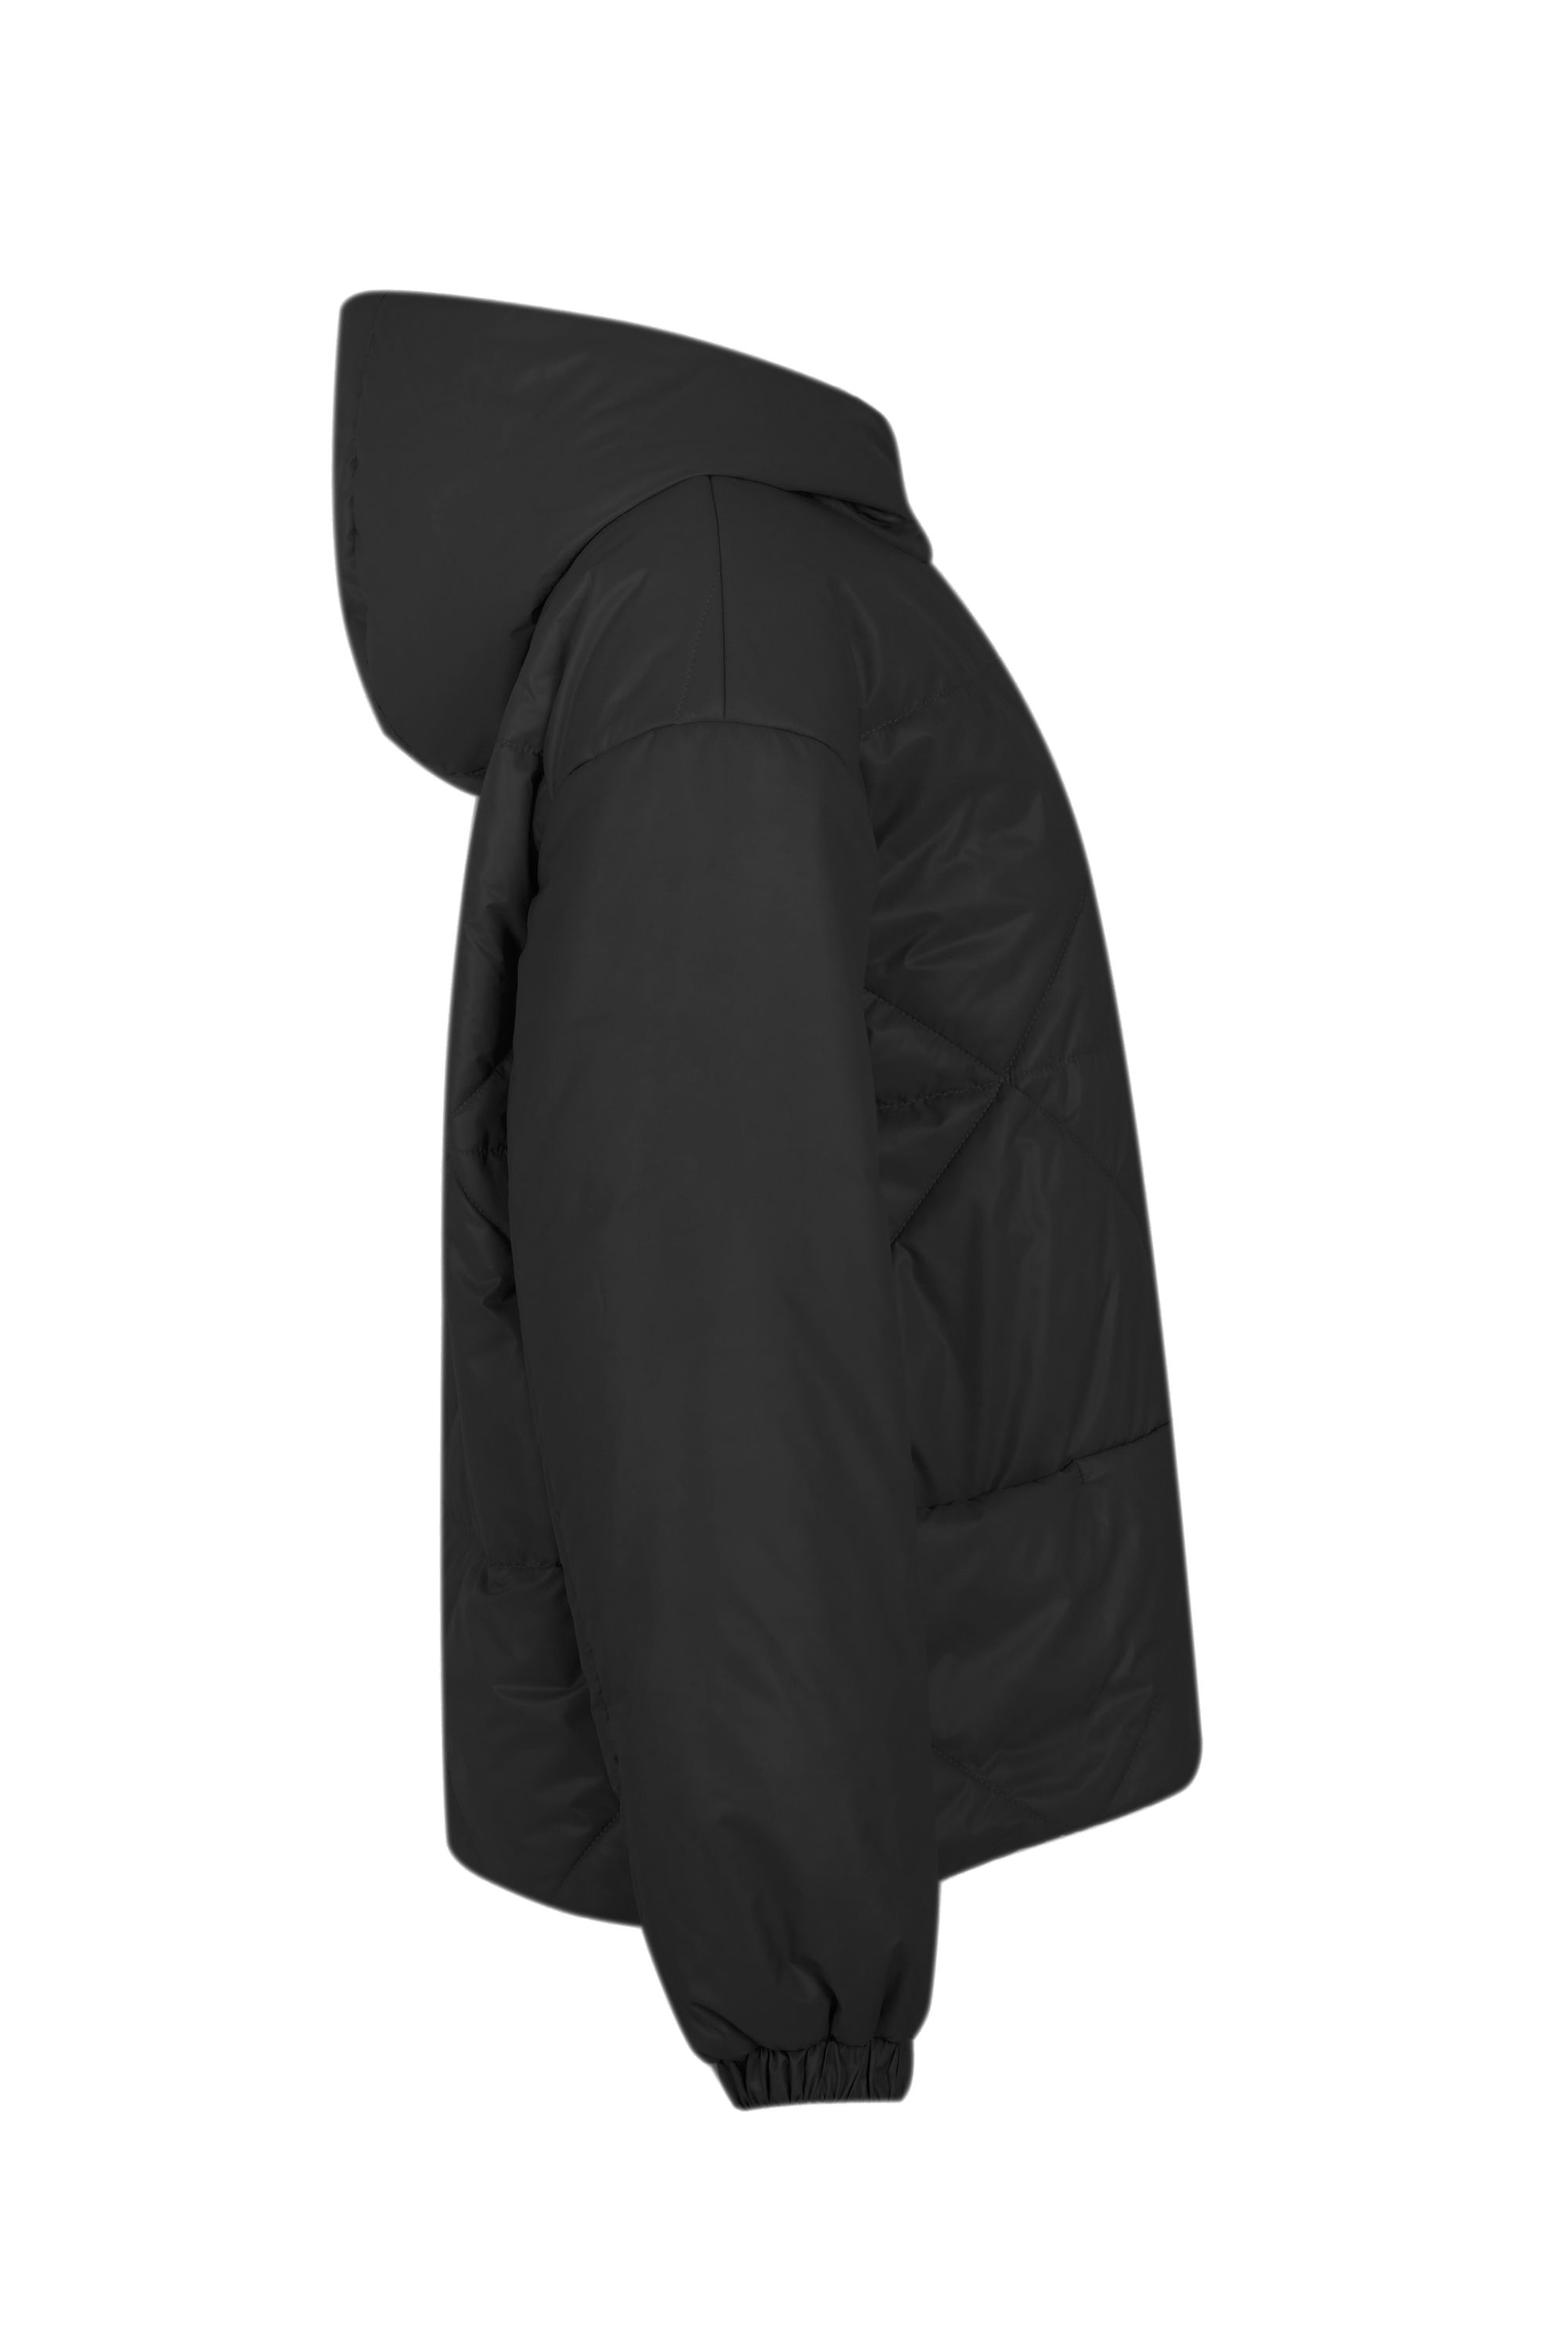 Куртка женская плащевая утепленная 4-236. Фото 2.